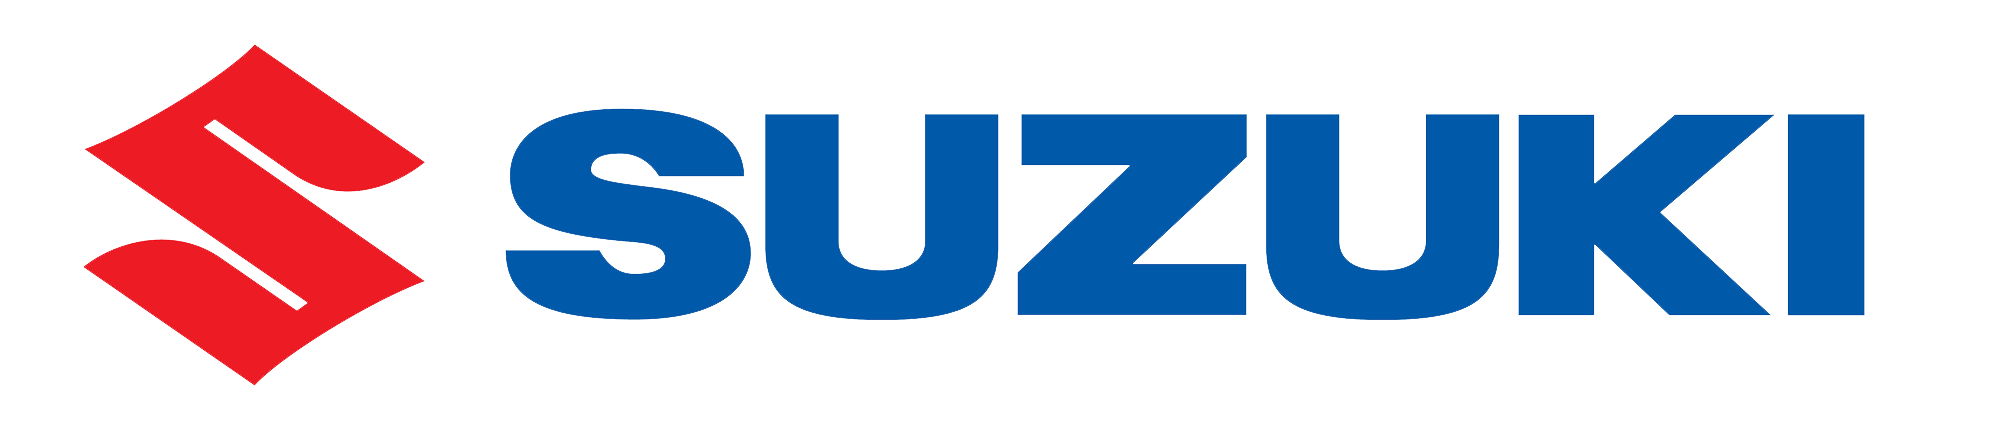 Suzuki-logo-resize-footer